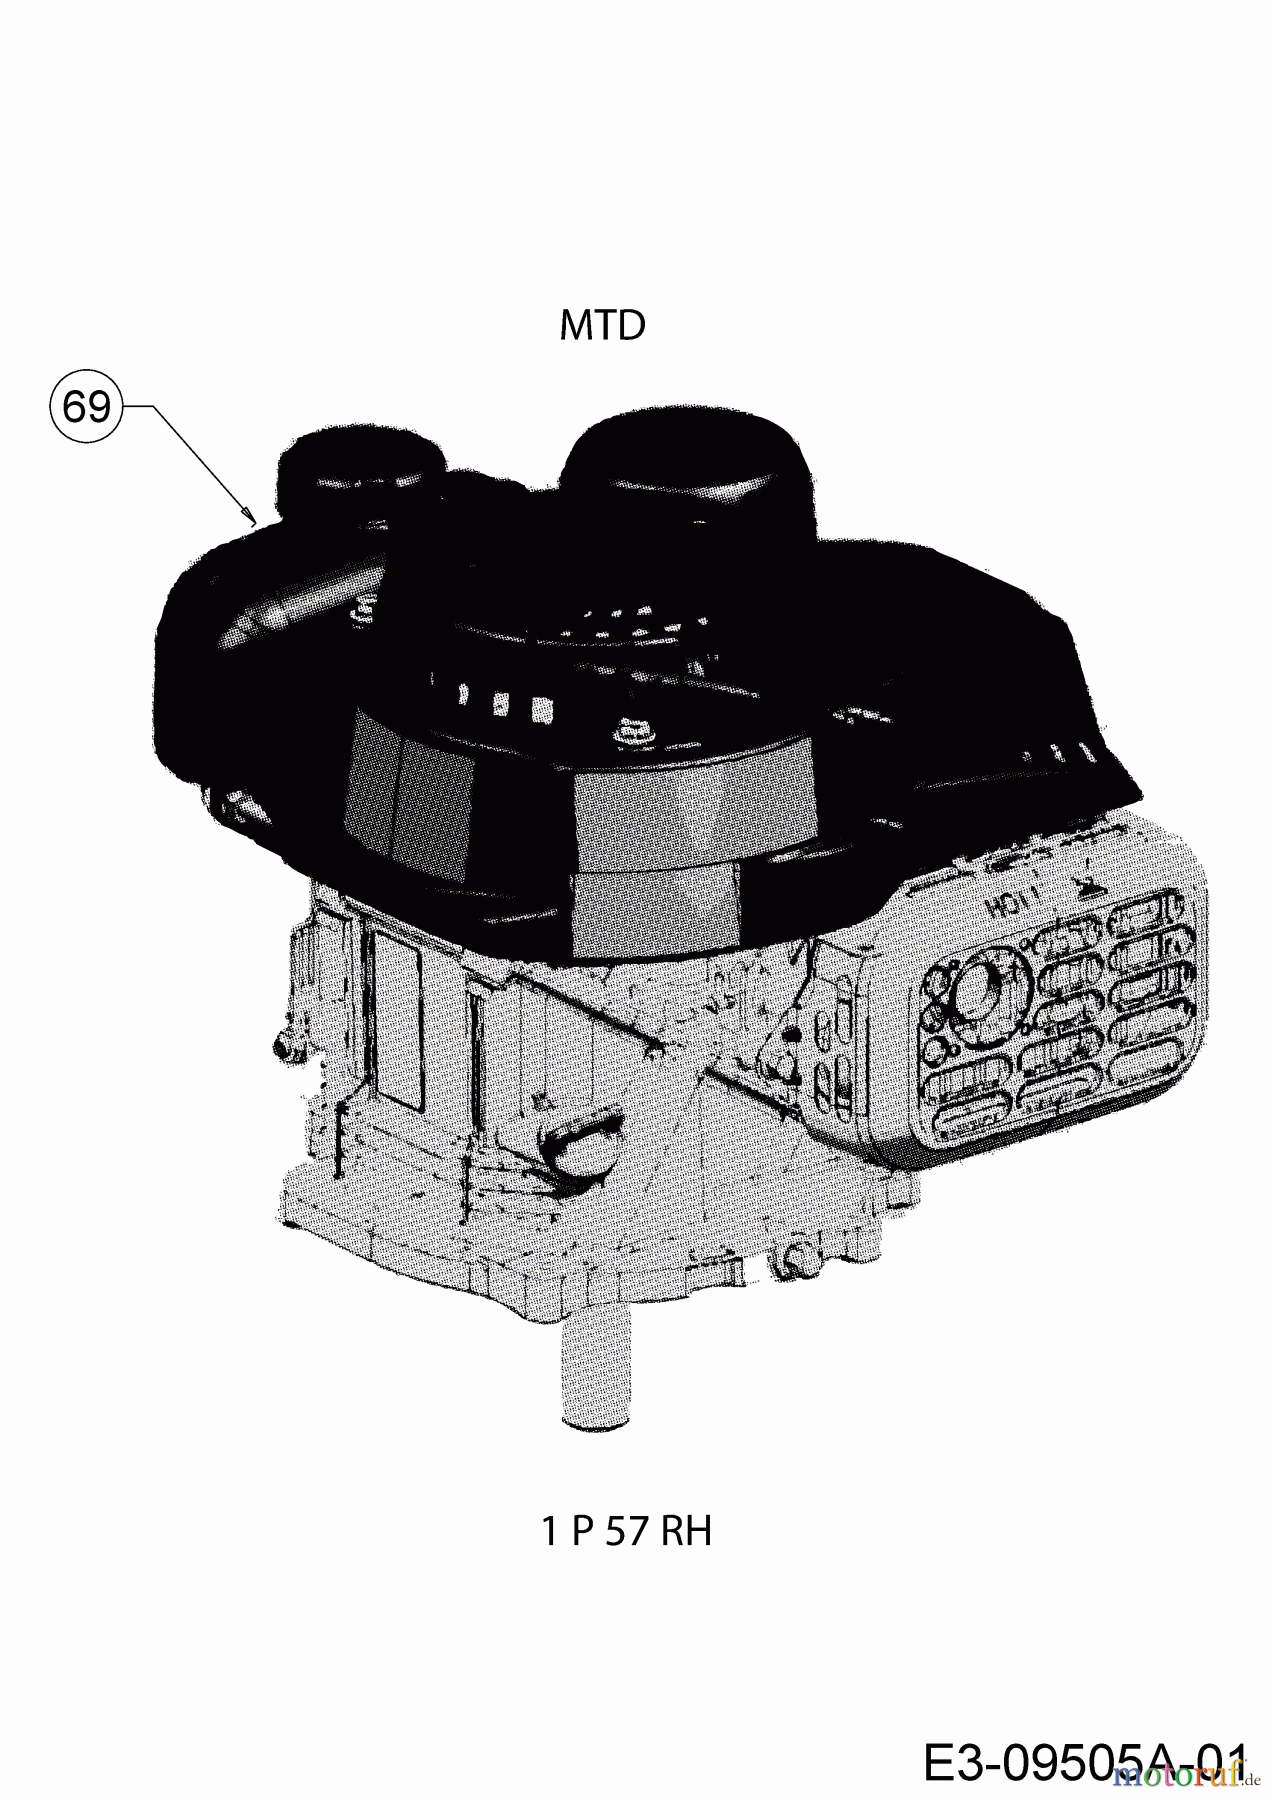  MTD Petrol mower self propelled SP 46 T 12E-TASJ600  (2019) Engine MTD